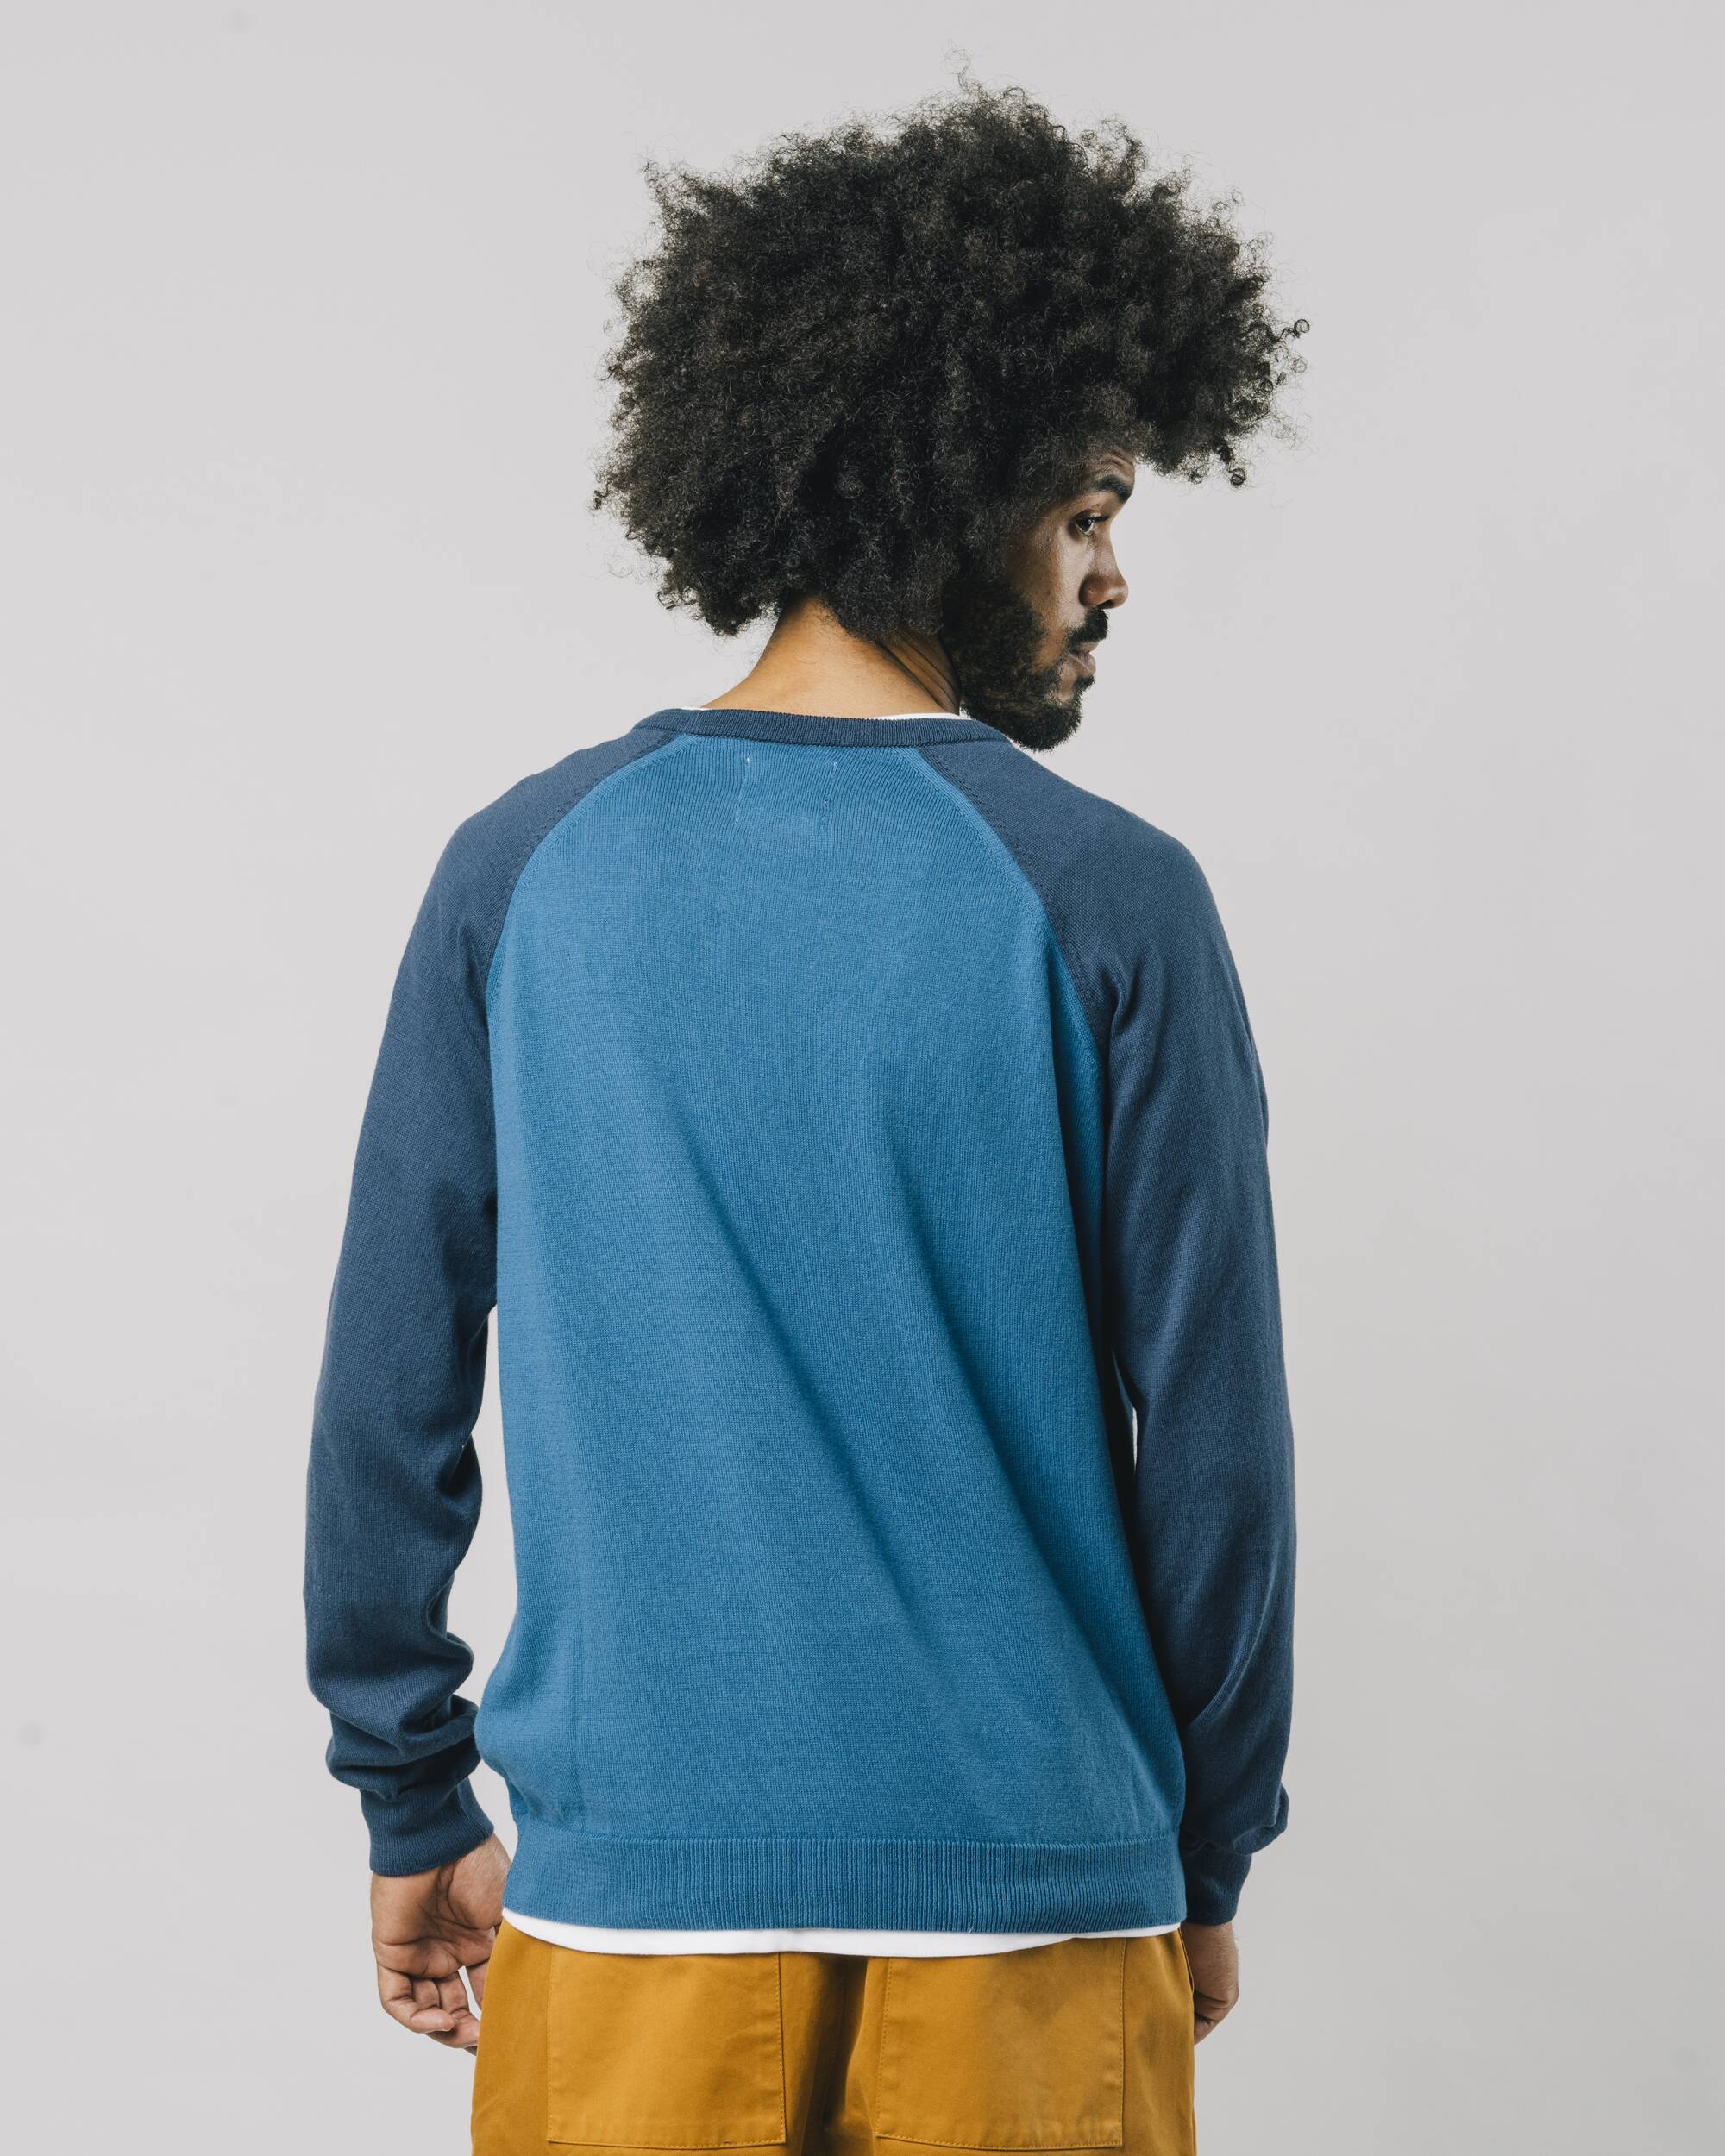 Color Block Sweater in blau aus 100% Bio - Baumwolle mit Vintage-Baseball-Stickerei von Brava Fabrics